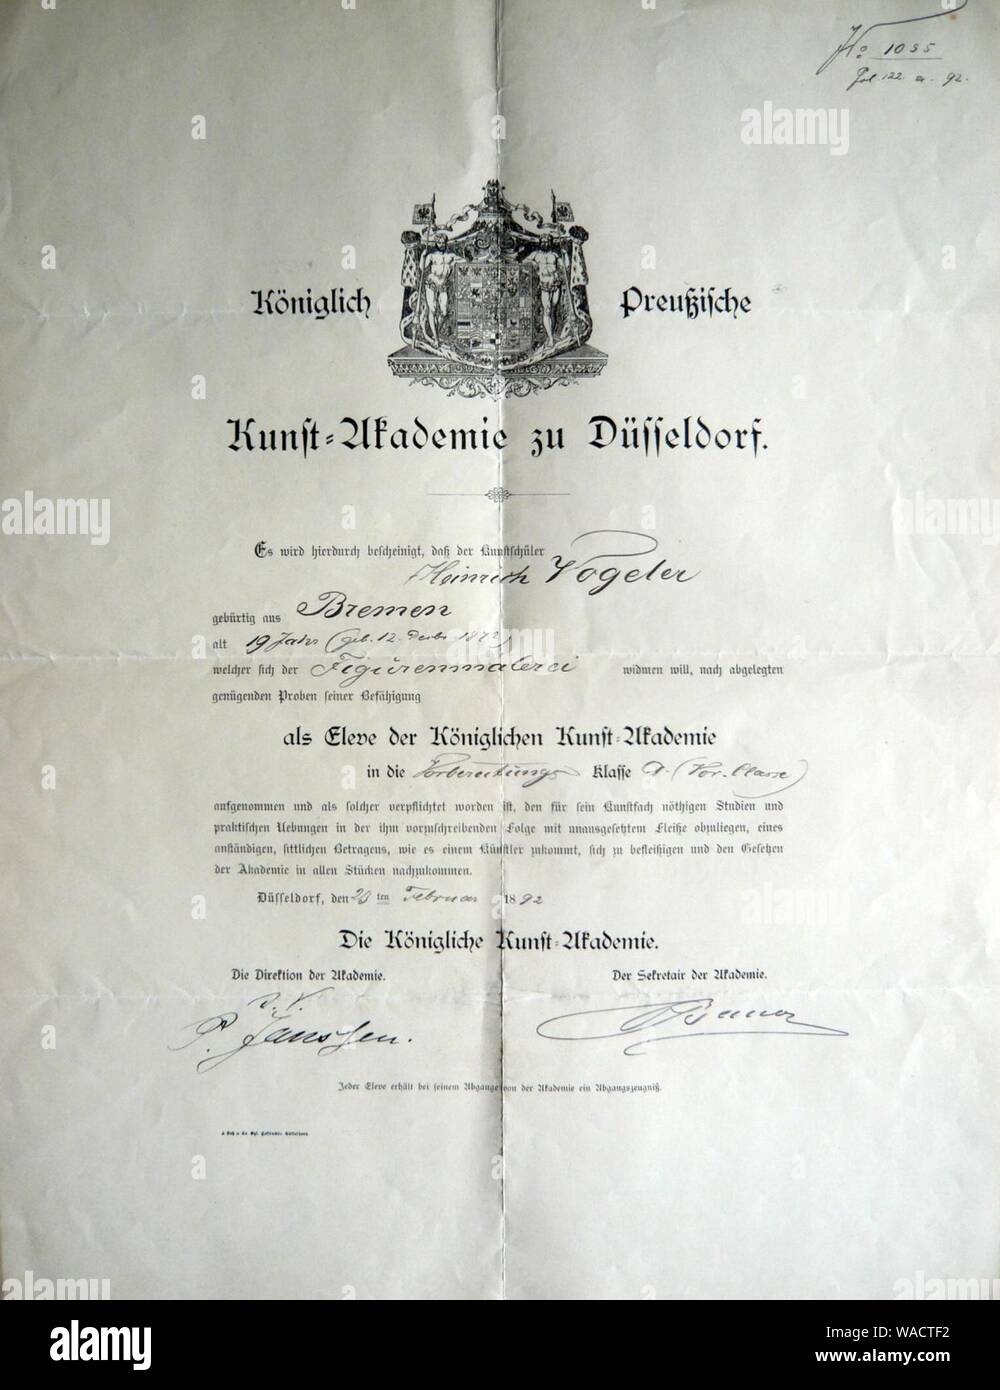 Dokument der Kunstakademie Düsseldorf, Aufnahme Heinrich Vogeler am 23. Februar 1892. Stock Photo